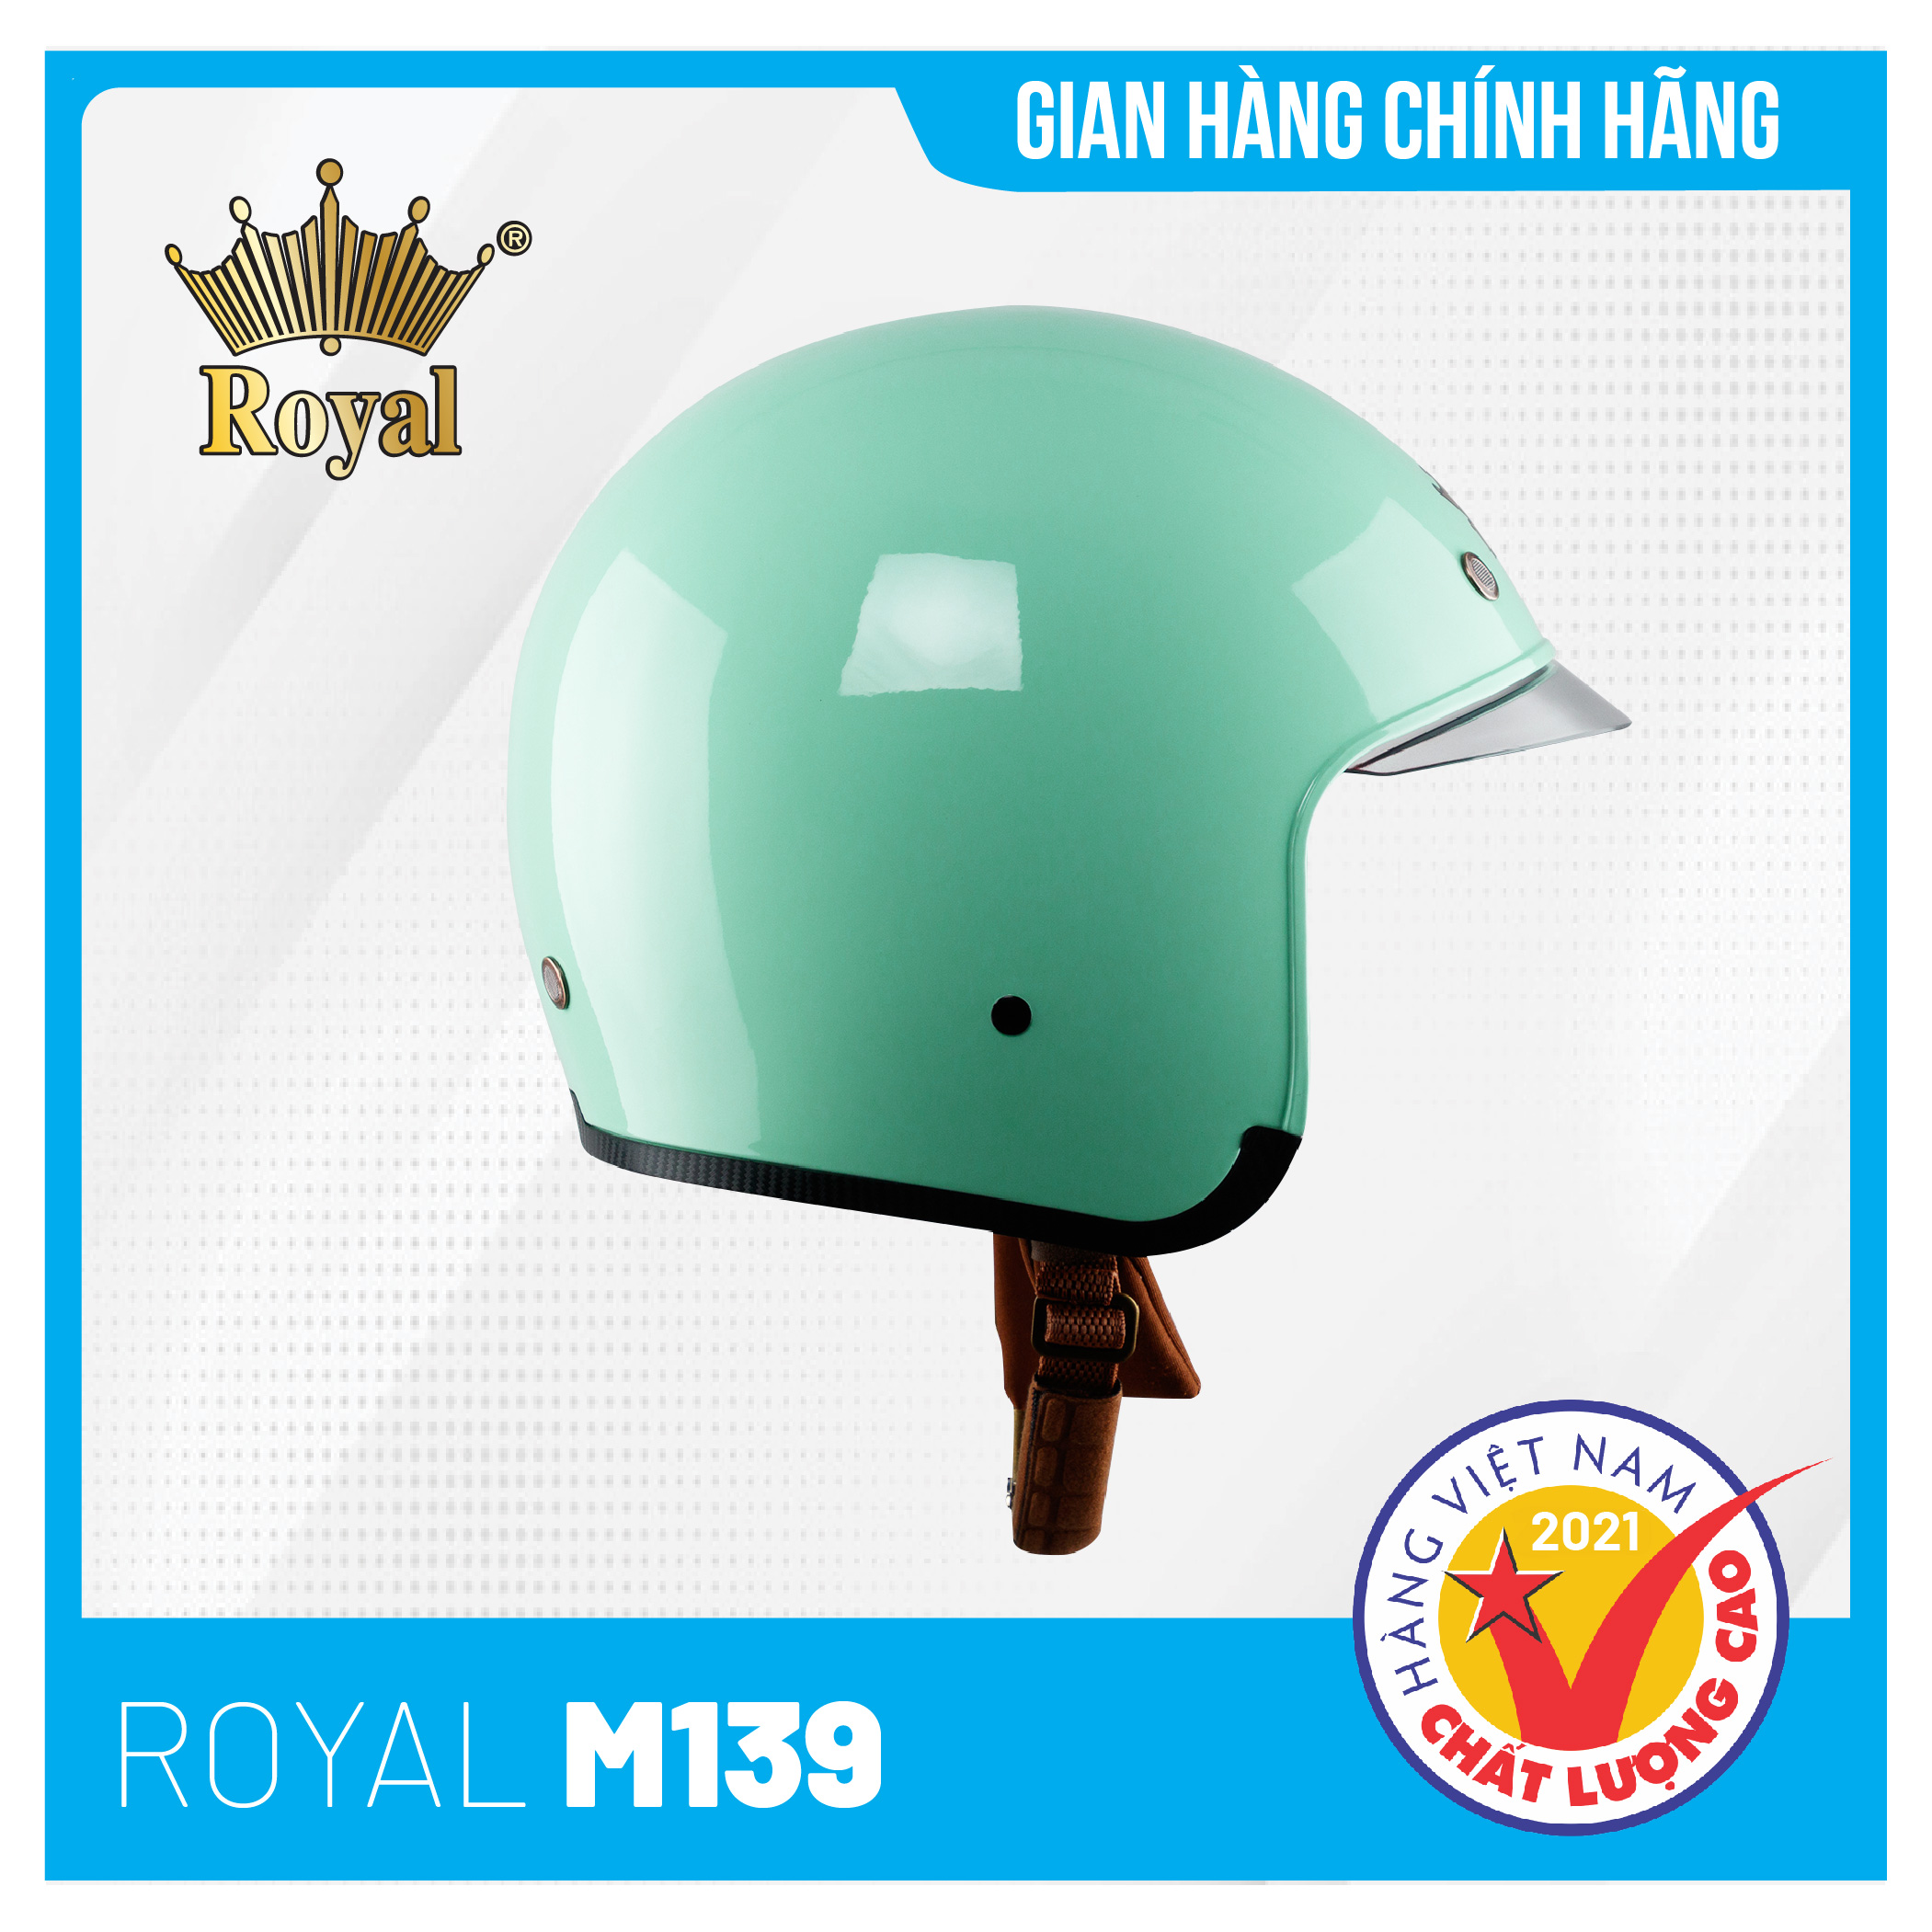 Nón bảo hiểm Royal M139 Kính Âm Trơn Sành Điệu, Trẻ Trung, Thời Thượng - Xanh Ngọc Bóng - Size XL